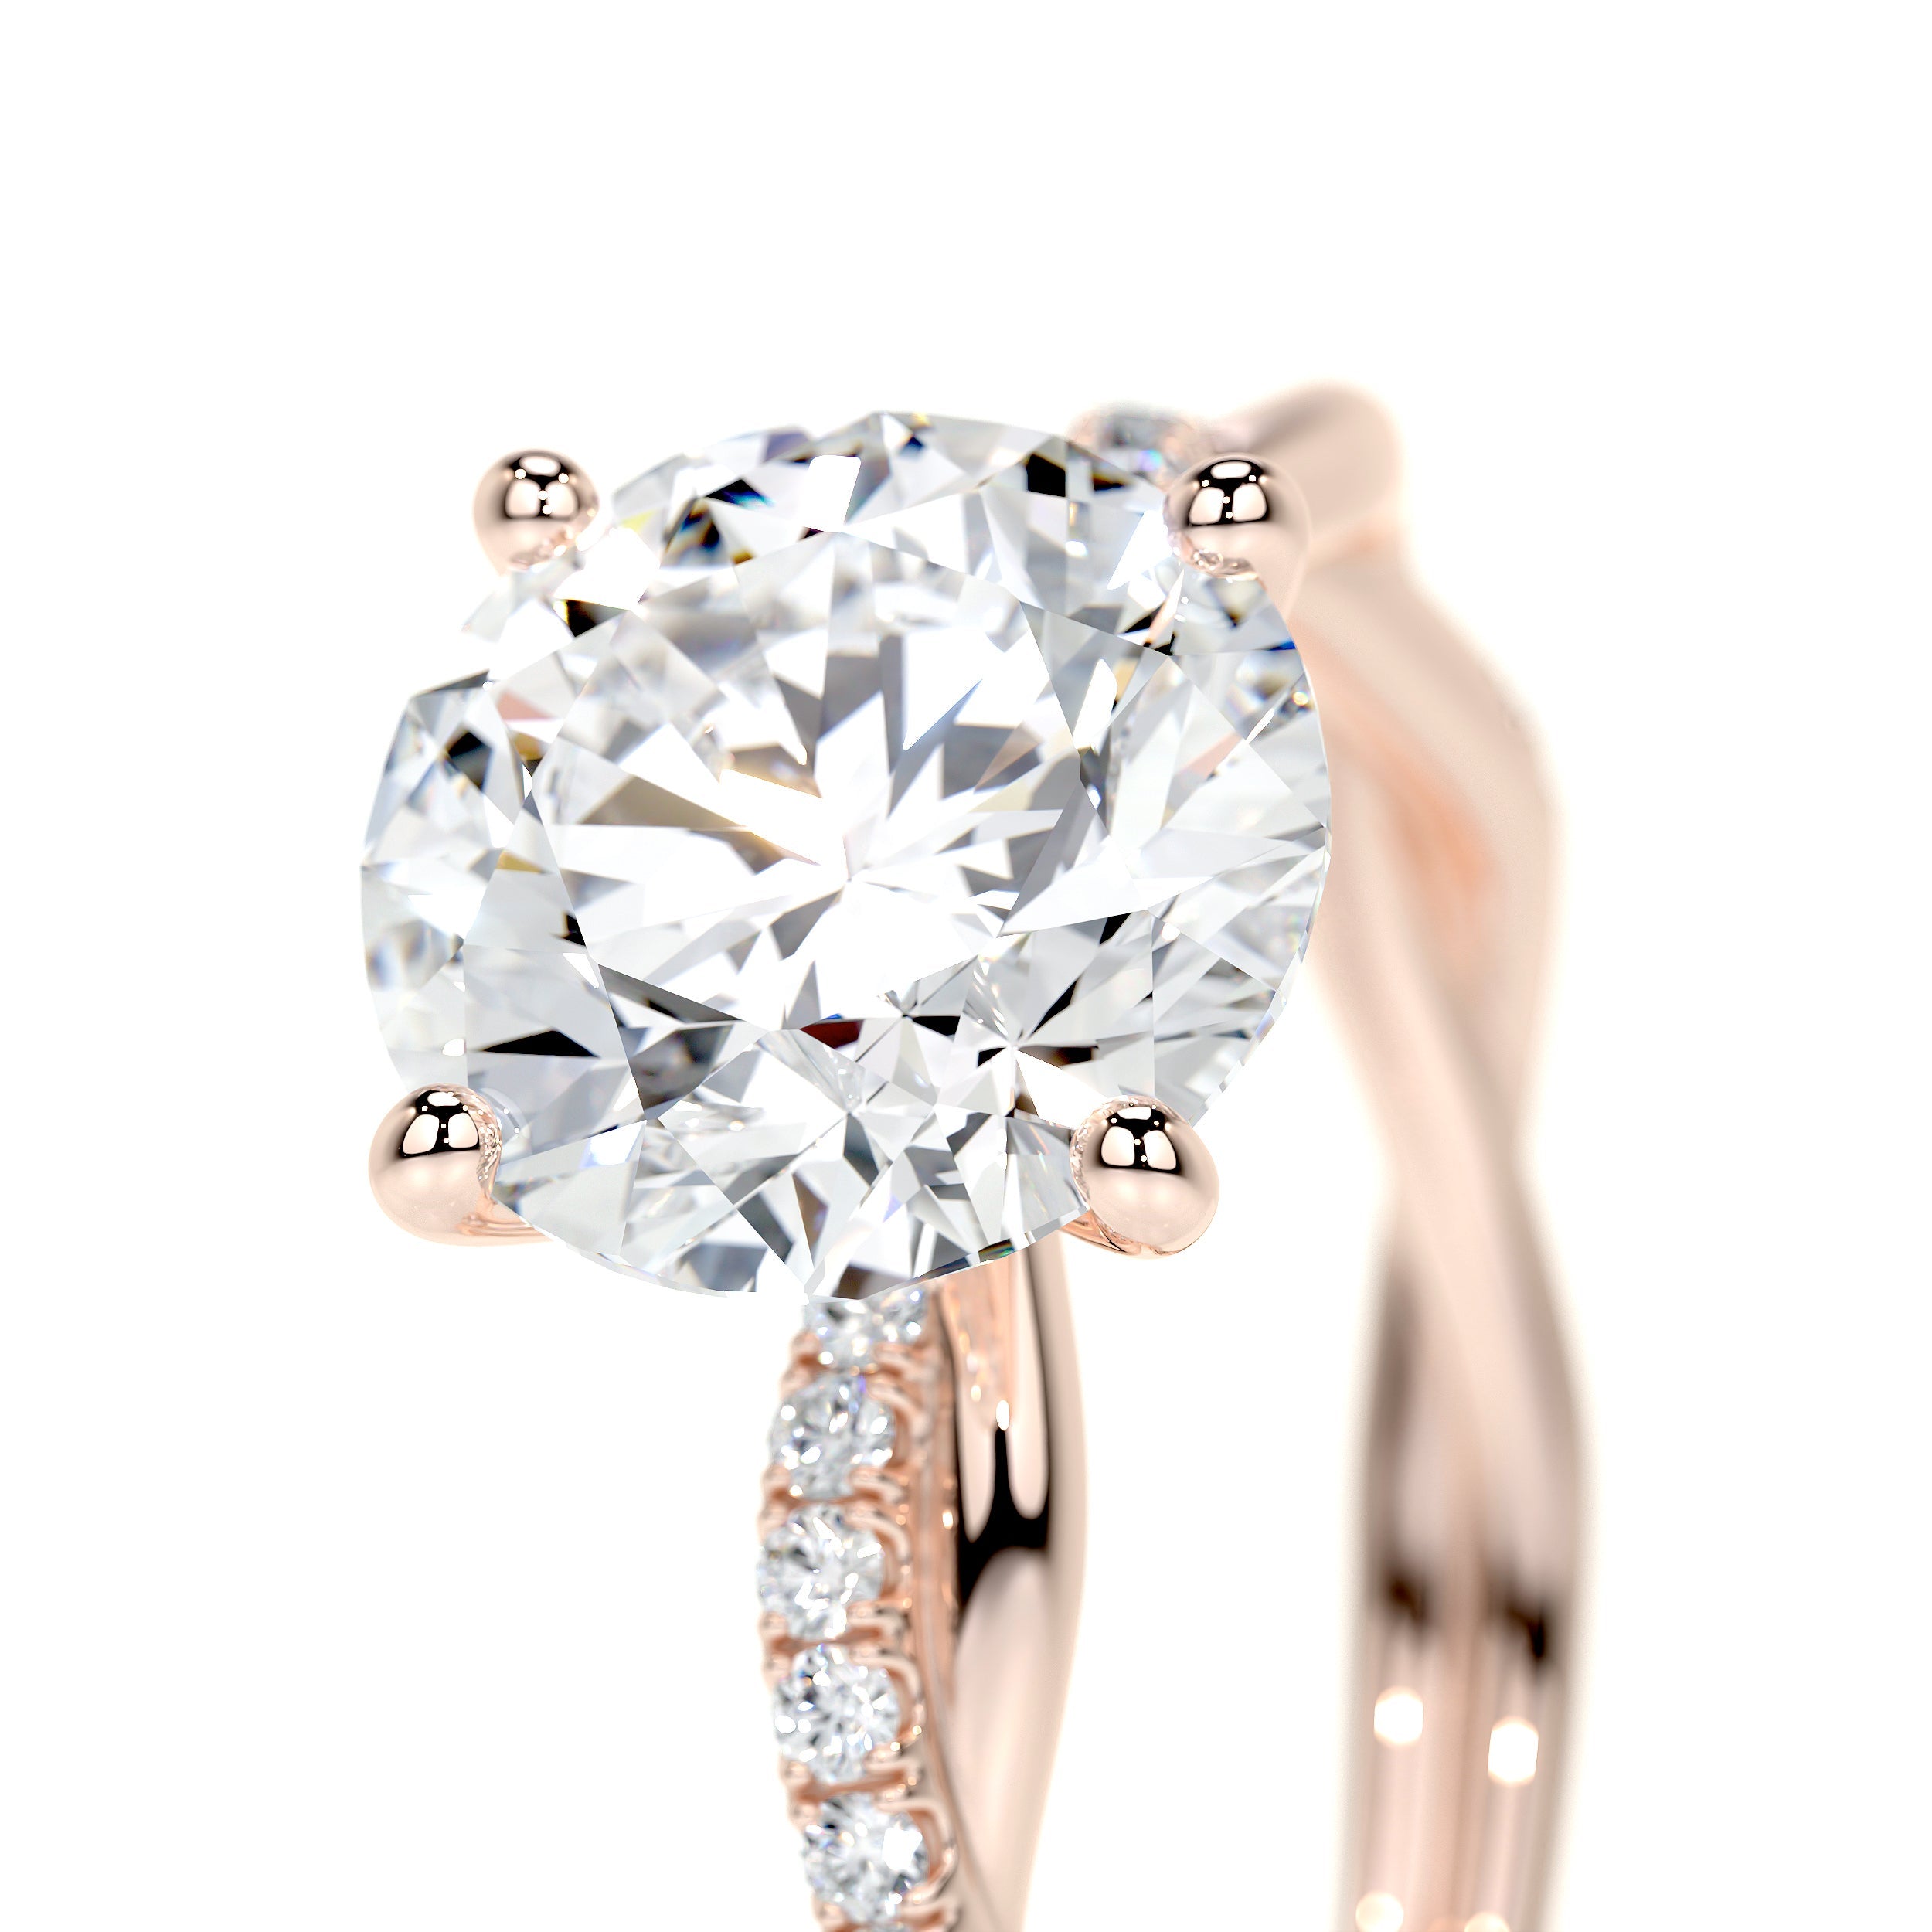 Crystal Lab Grown Diamond Ring   (1.8 Carat) -14K Rose Gold